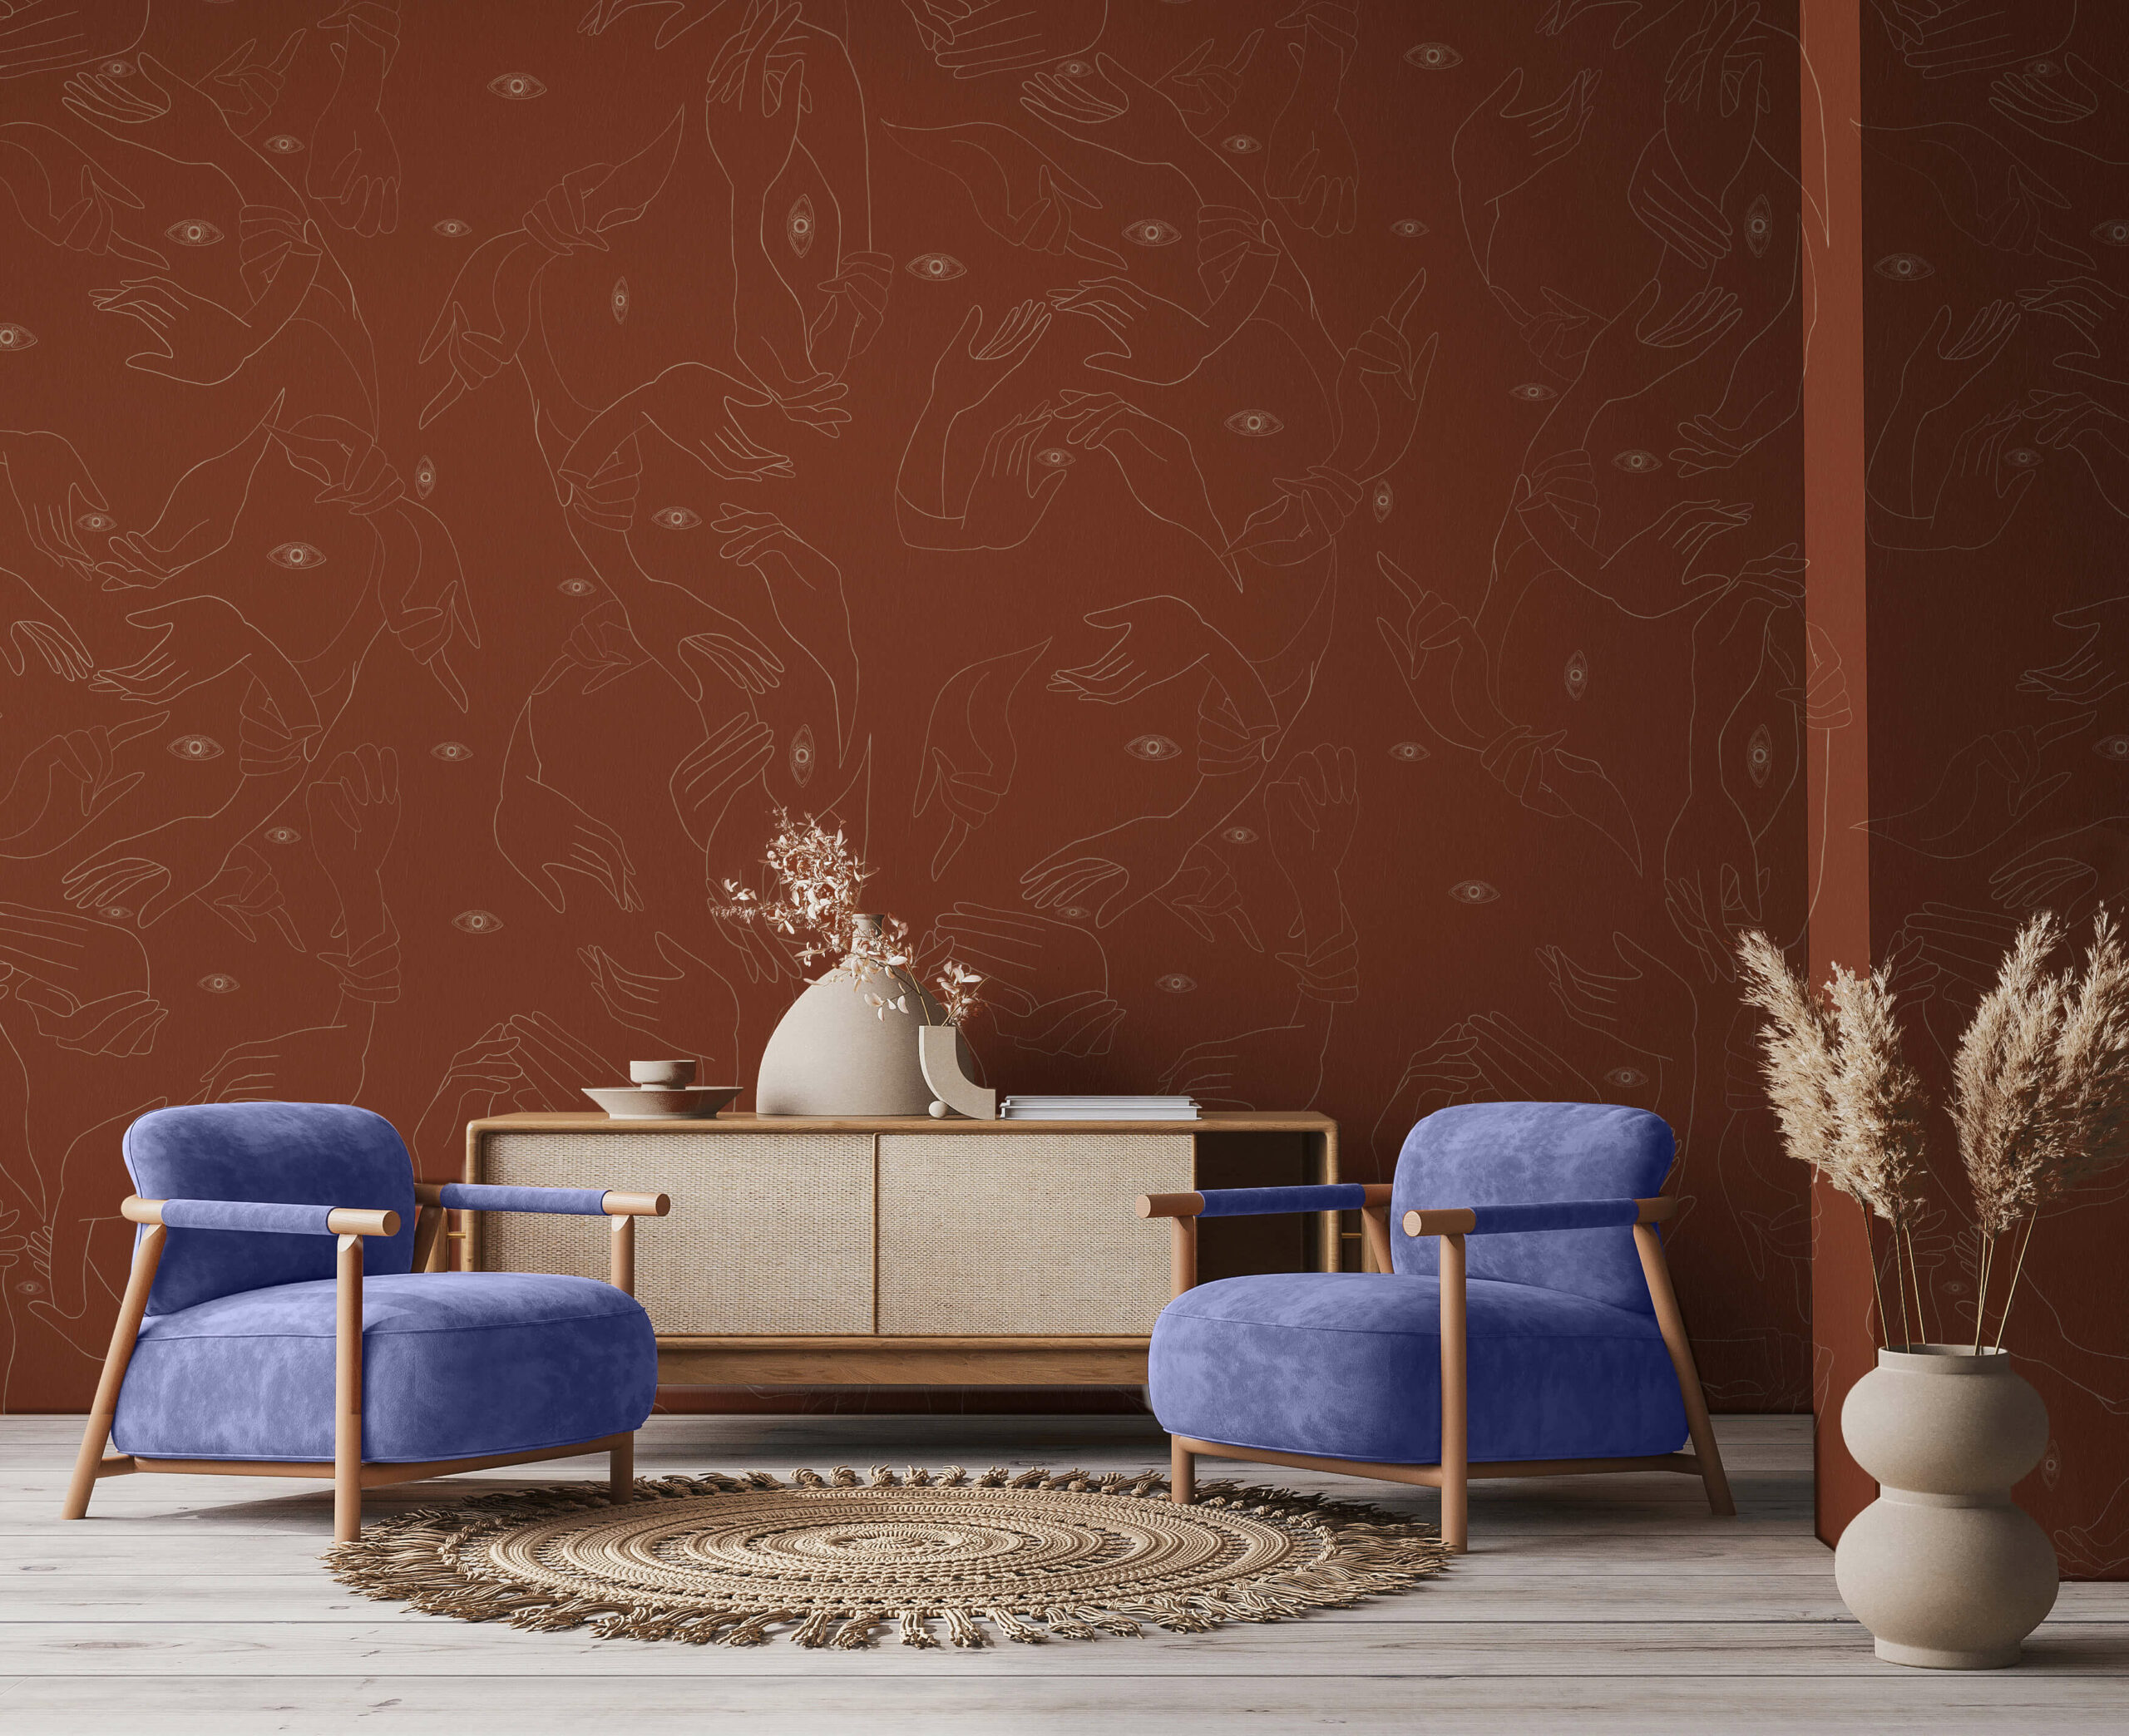 Wallpaper-Uno-Nessuno-Cannella-MaVoix-wallpaper-comfort-home-corner-interior